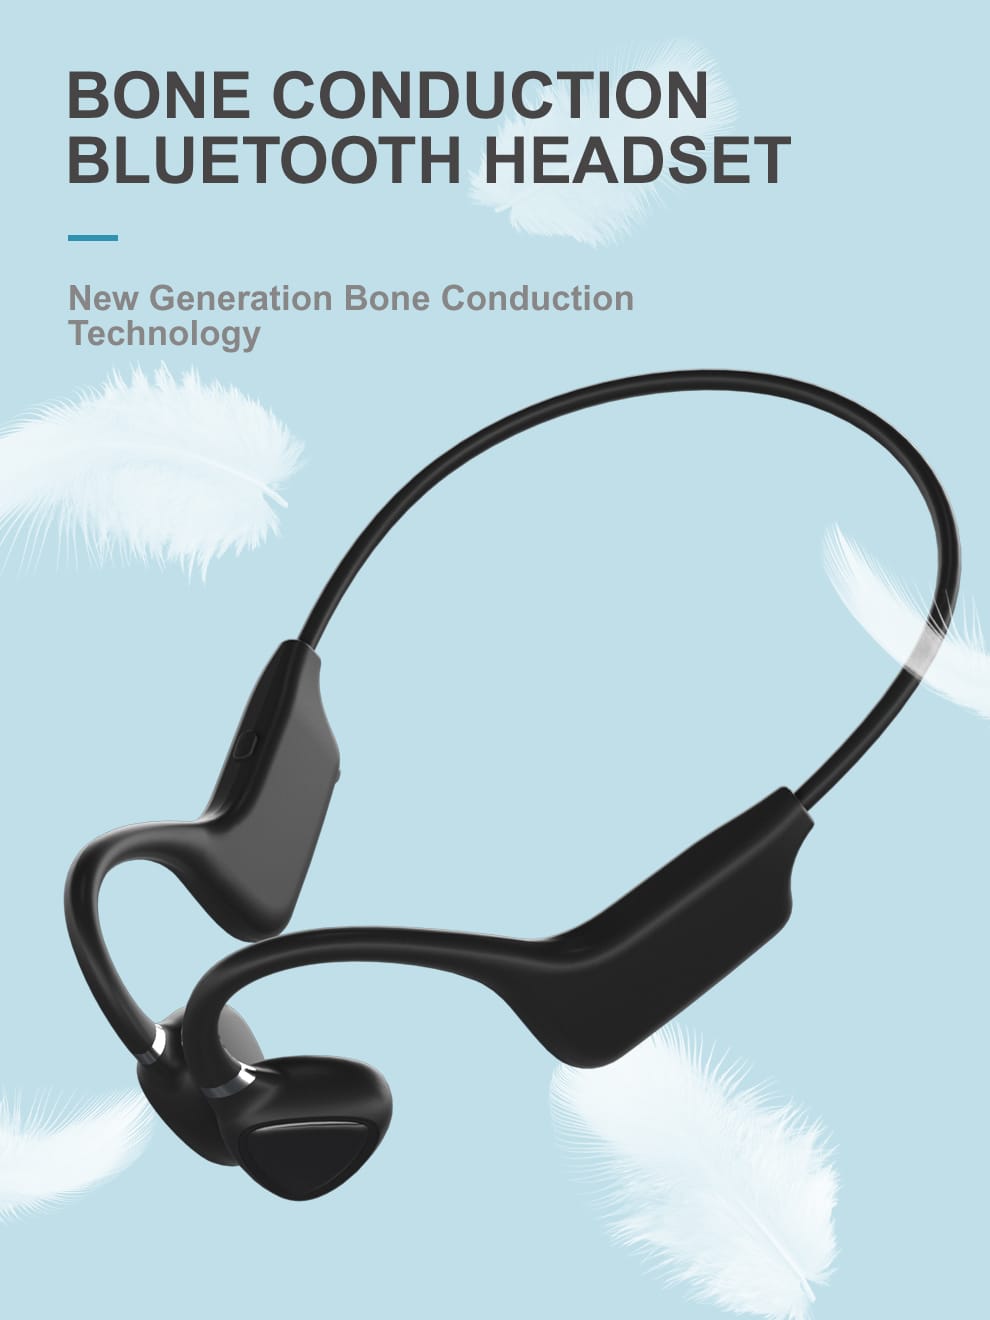 ePP-BC18 Tecnología inteligente de auriculares Bluetooth de conducción ósea inteligente de grado militar, la última tecnología de audio para auriculares inteligentes Vendidos más de 32,000 en todo el mundo